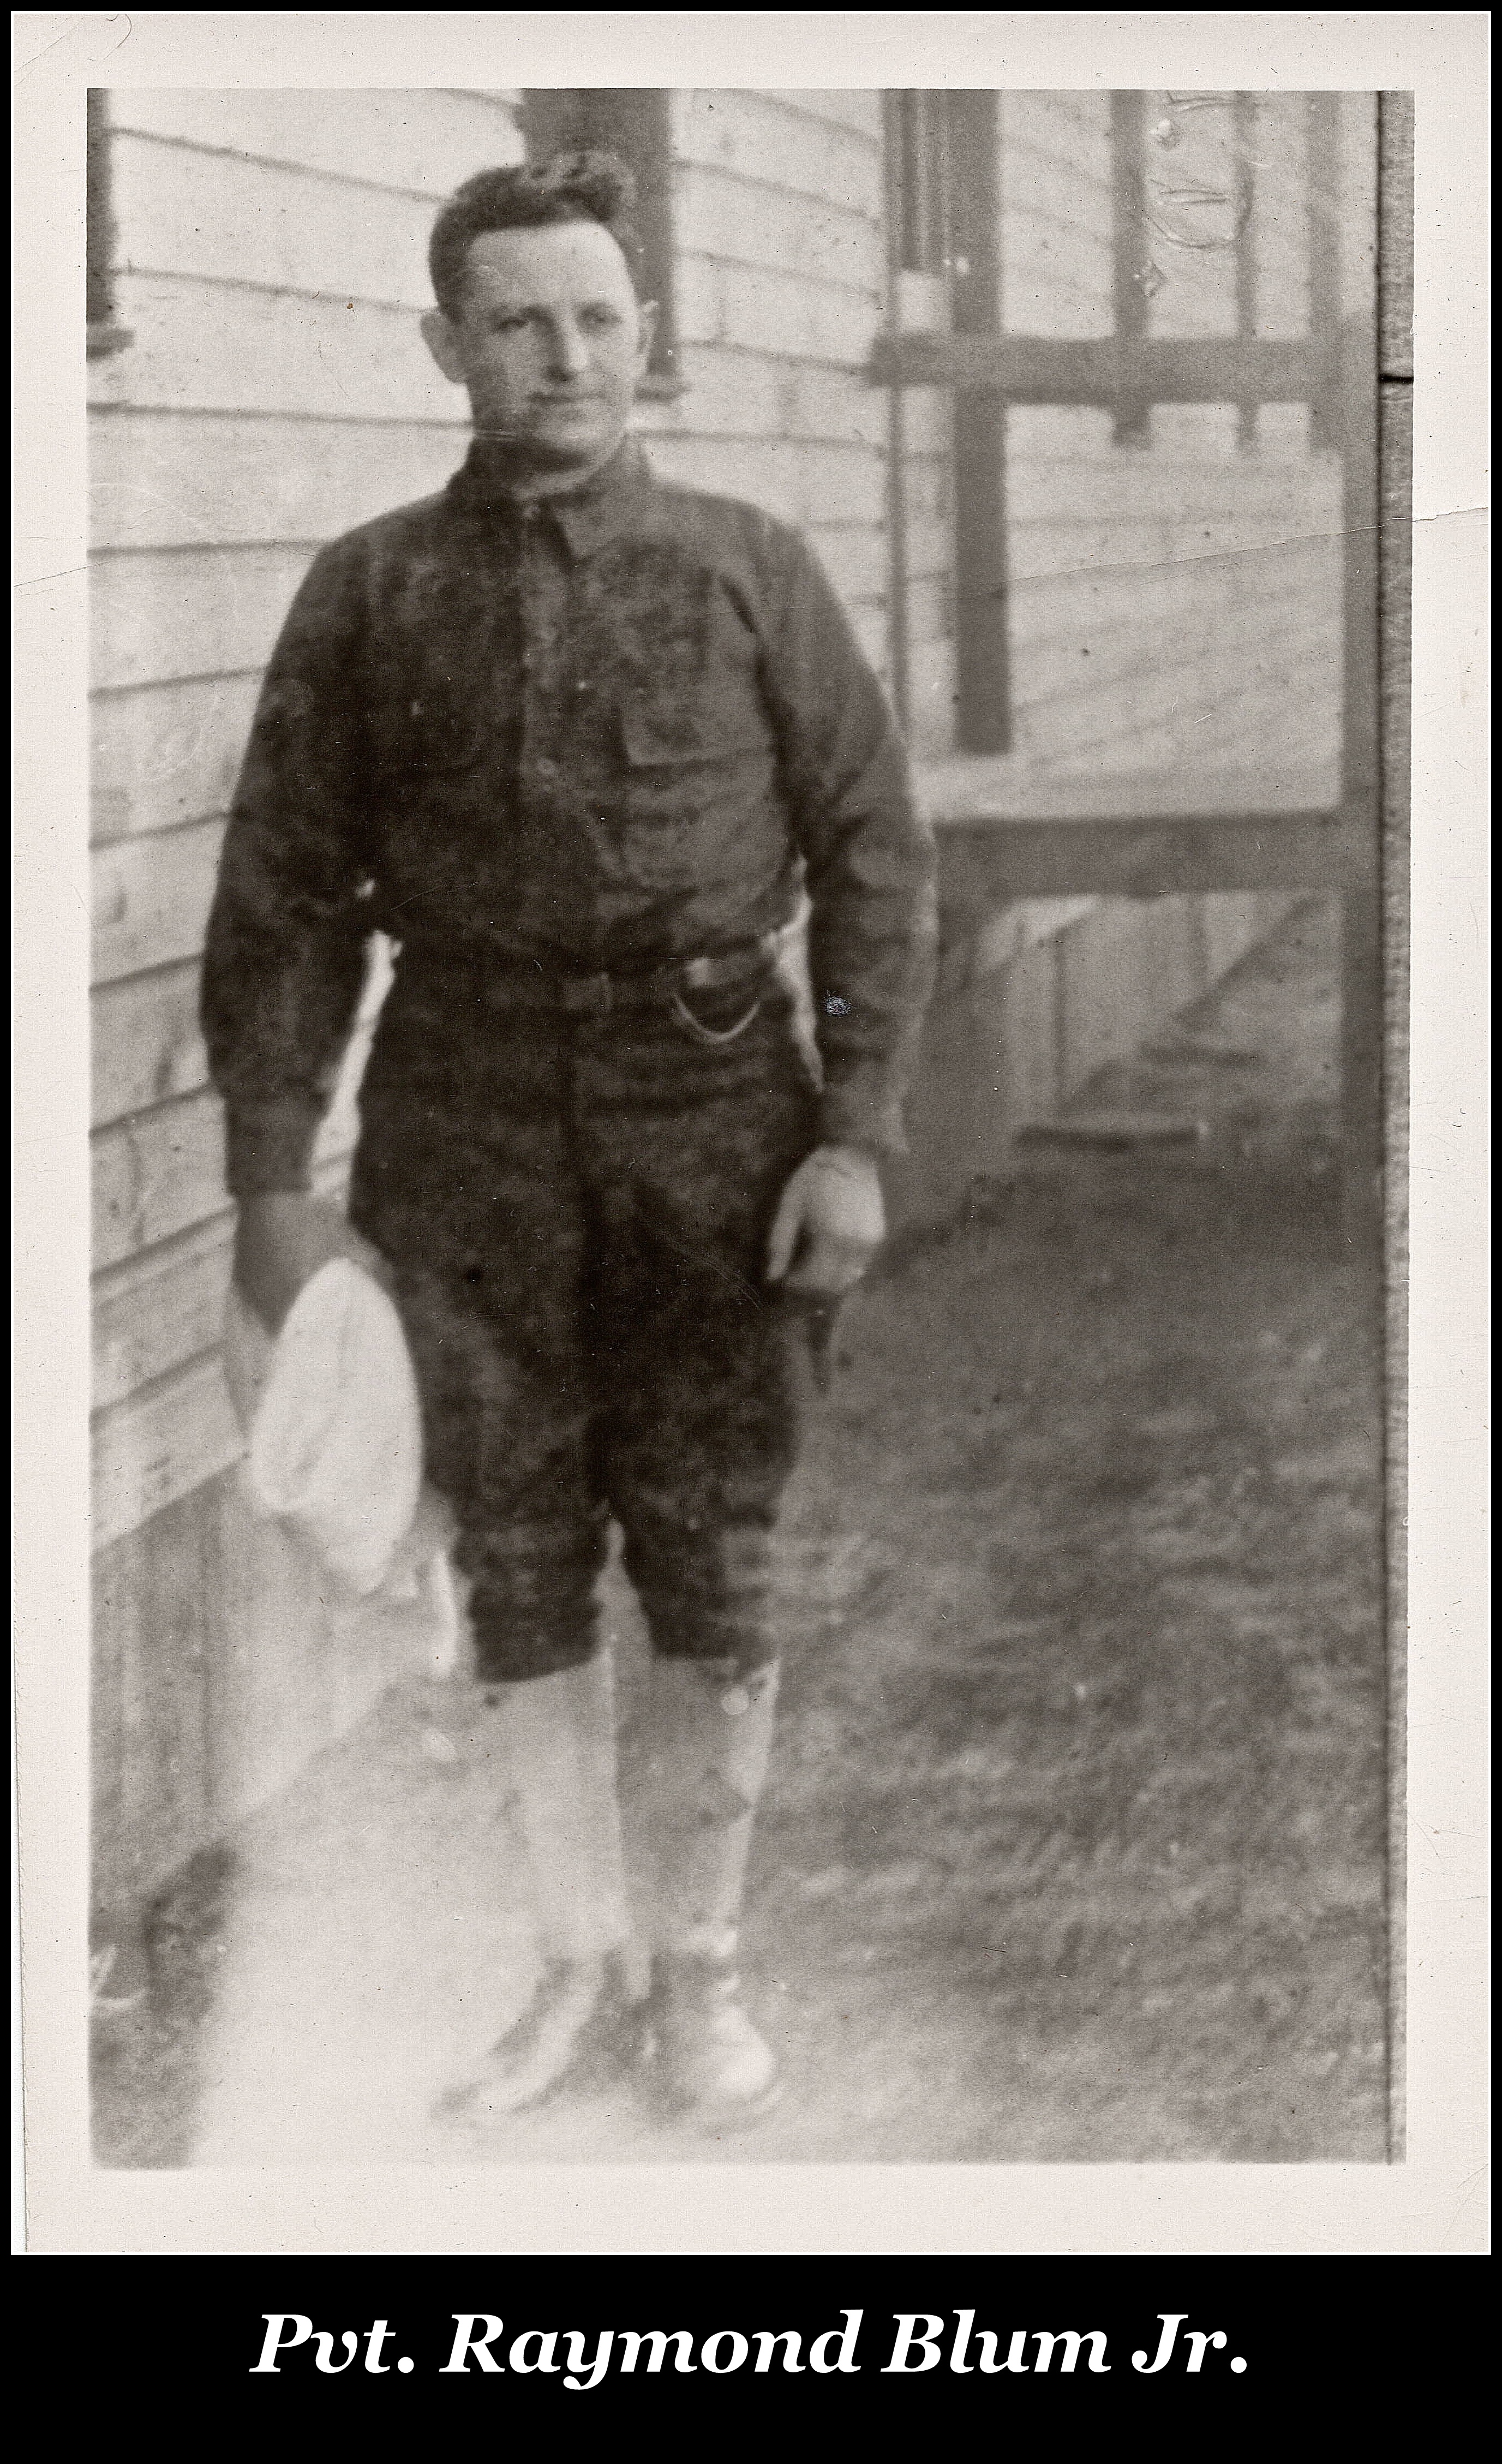 Pvt. Raymond Blum Jr., KIA WW1, Grand Pre, France